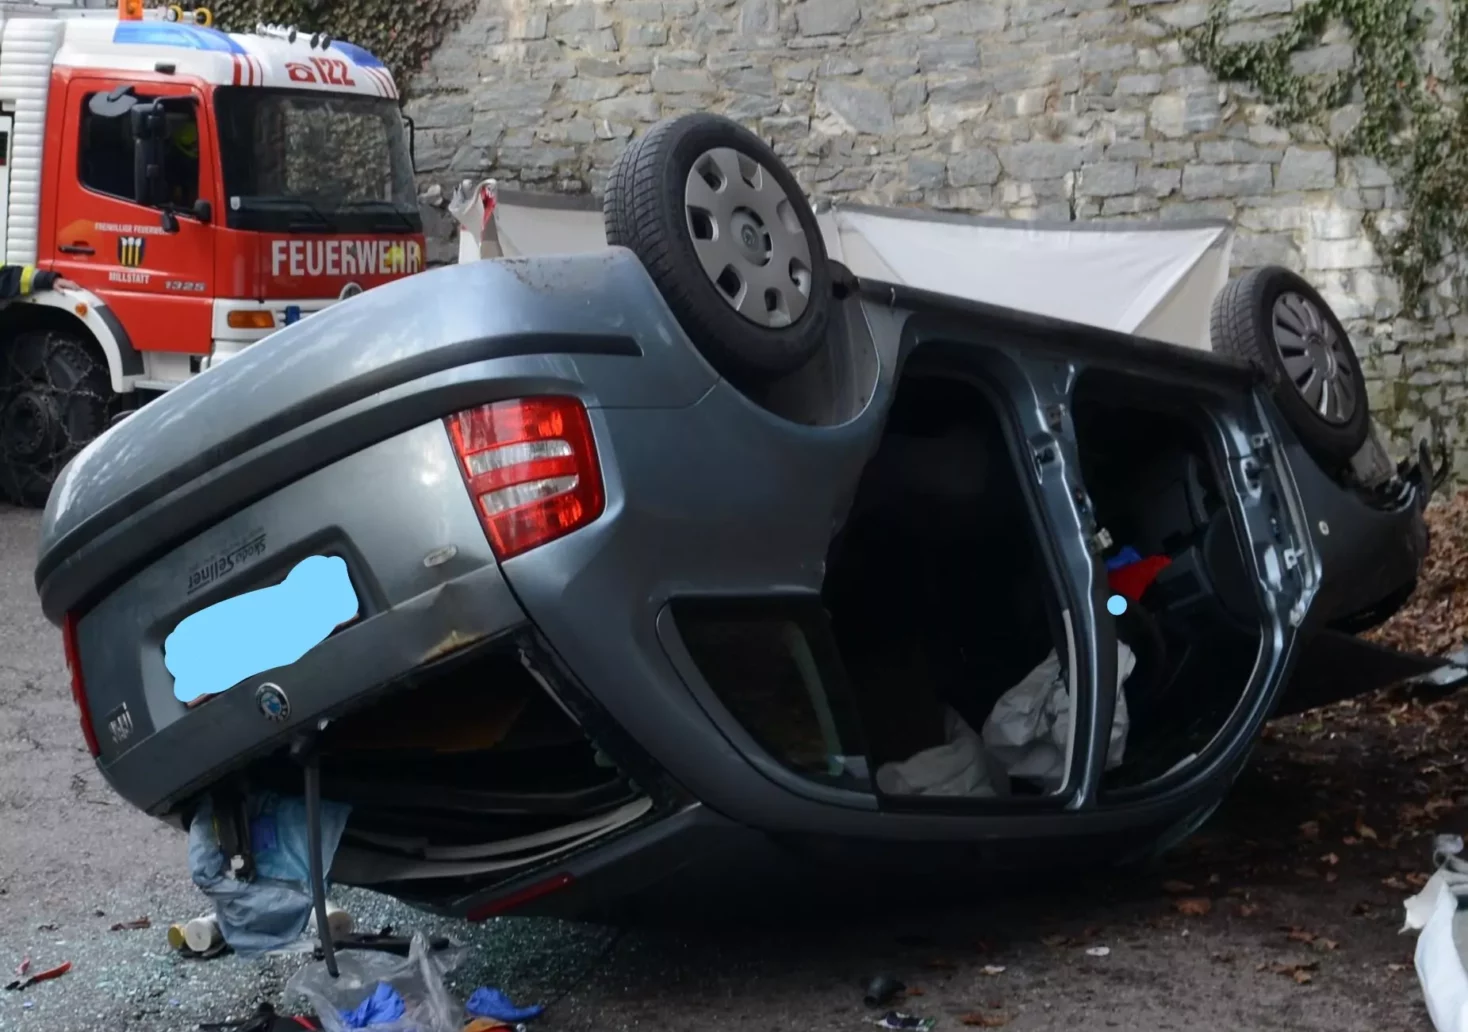 Fahrzeug stürzt über 7-Meter hohe Mauer – Fahrer verstirbt am Unfallort